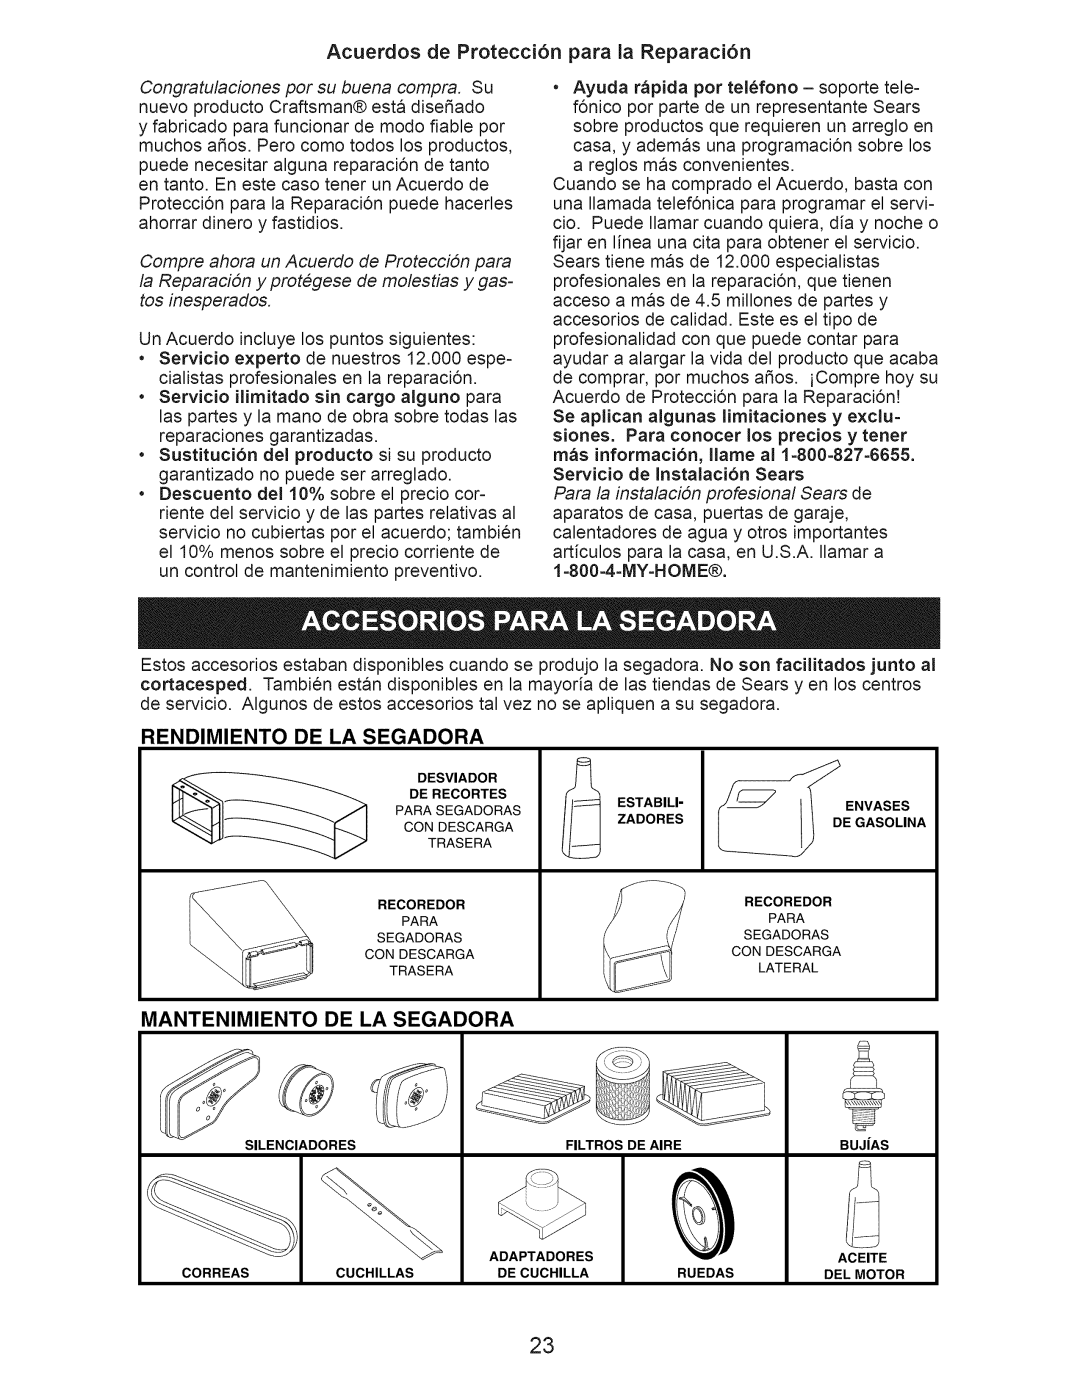 Craftsman 37623 manual Acuerdos de Protecci6n para la Reparaci6n, Rendimiento De La Segadora, Mantenimiento De La Segadora 